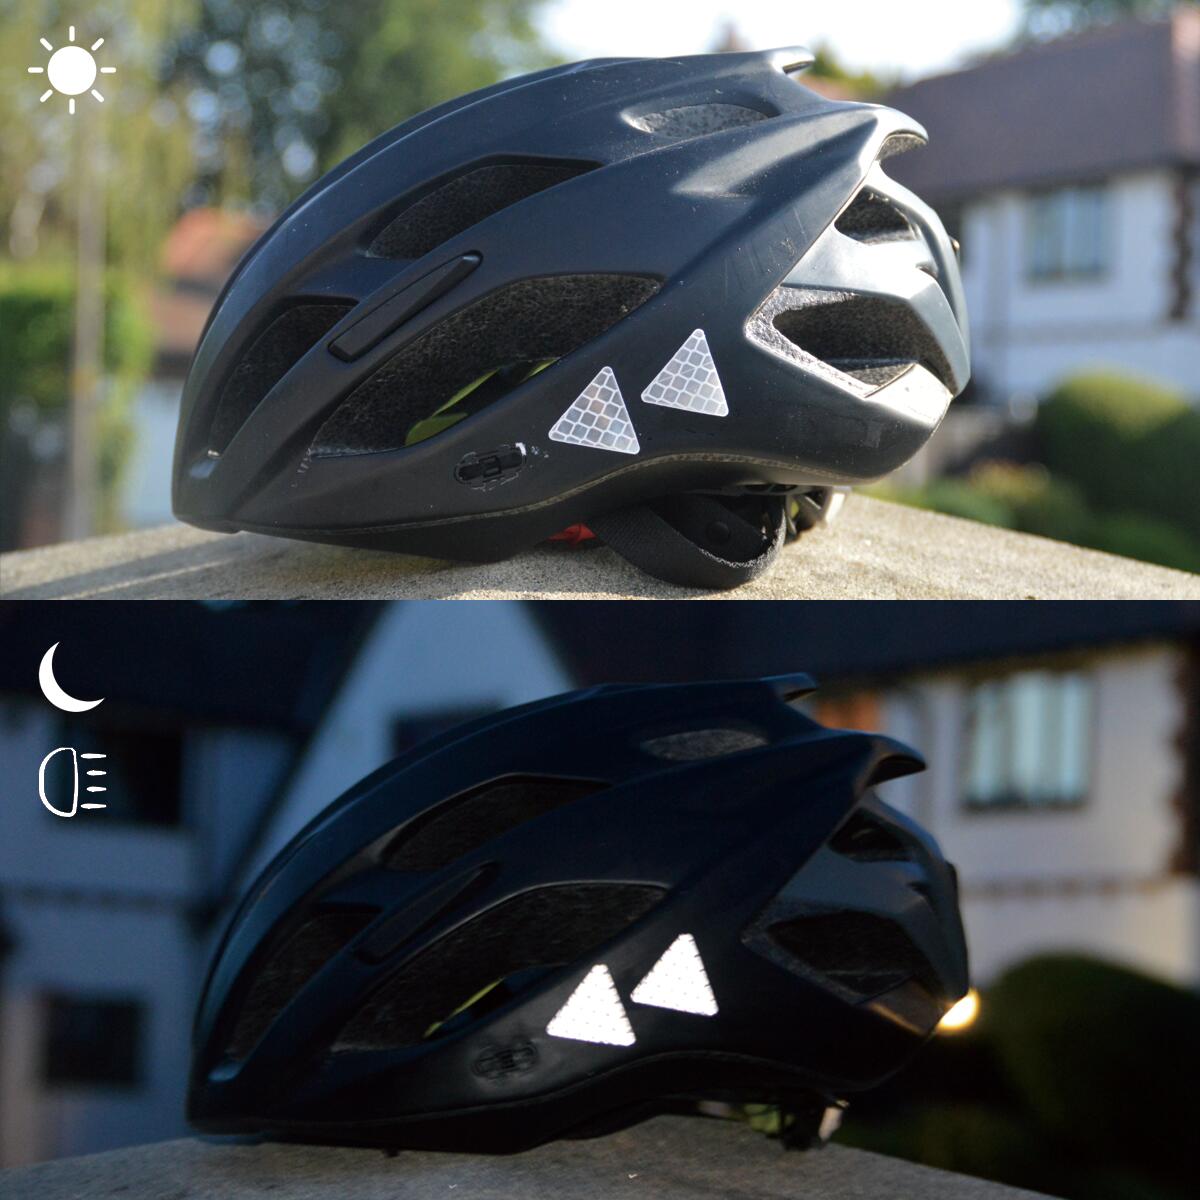 Vergleichsfoto der weißen Outdoor-Sticker an einem Fahrradhelm bei Tag und bei Nacht